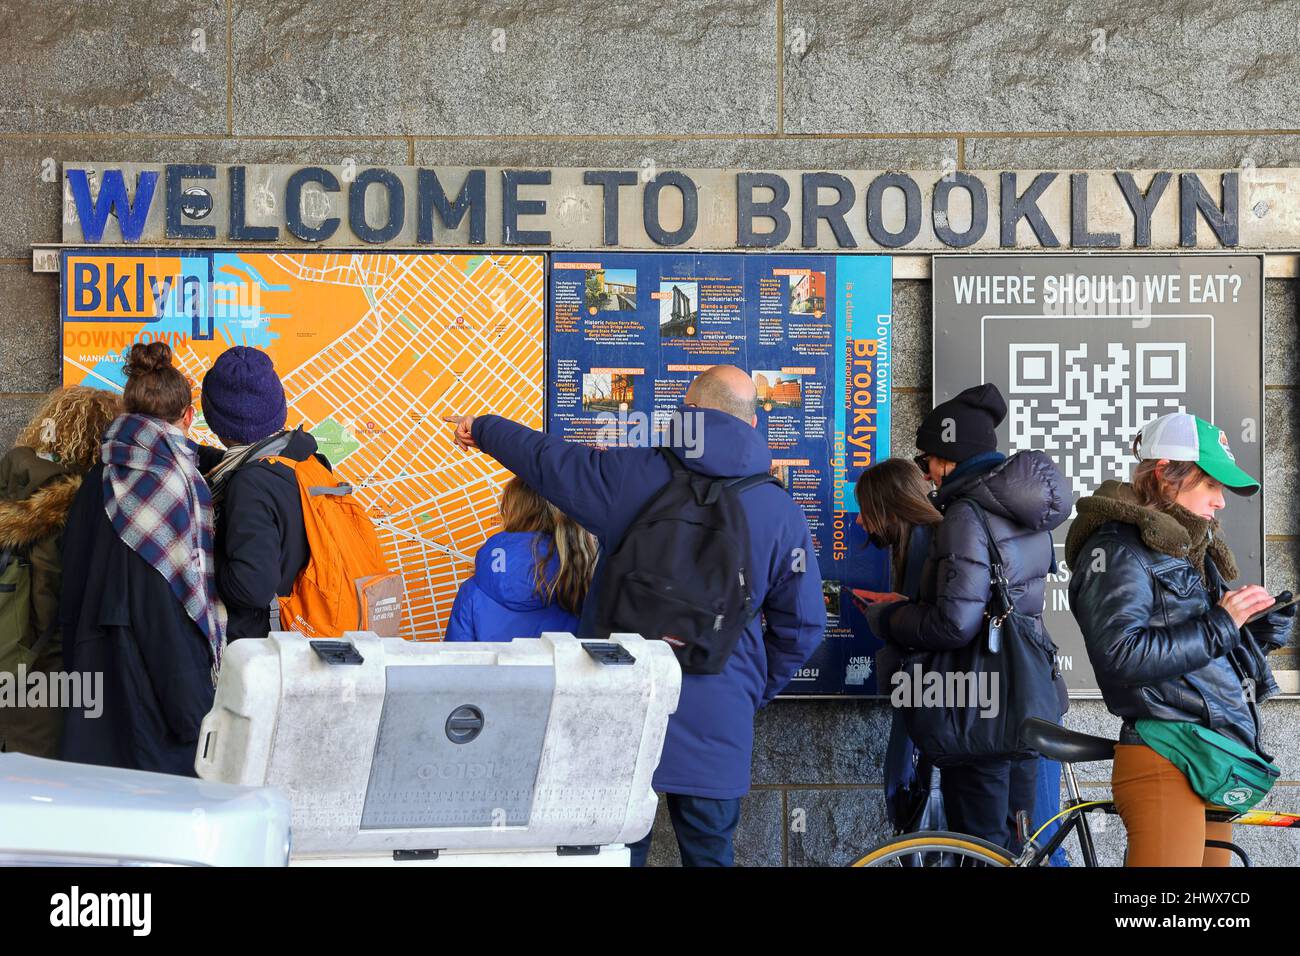 Touristen, die auf eine Karte von Brooklyn, New York, zeigen. Touristen, die sich eine Karte von Brooklyn ansehen, und Menschen, die am Telefon nach Wegbeschreibungen suchen. Stockfoto